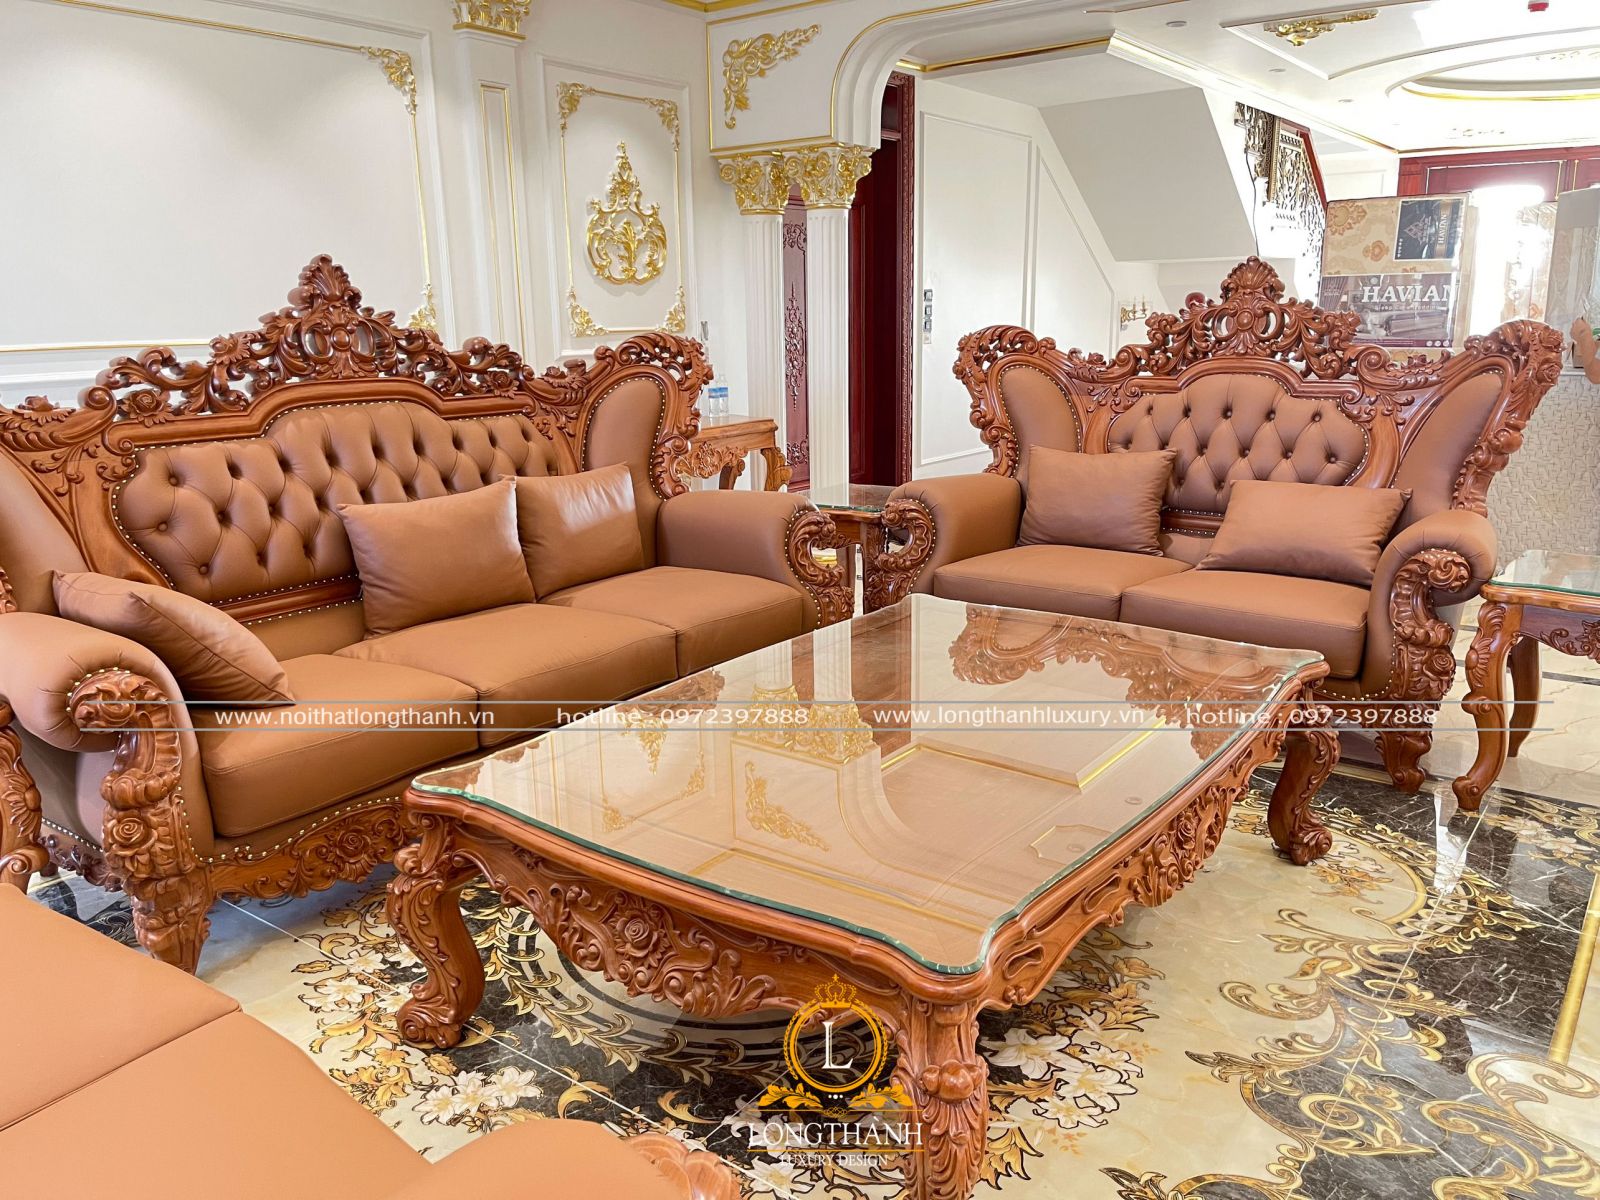 Sản phẩm sofa tân cổ điển cao cấp được sử dụng công nghệ sơn Inchem